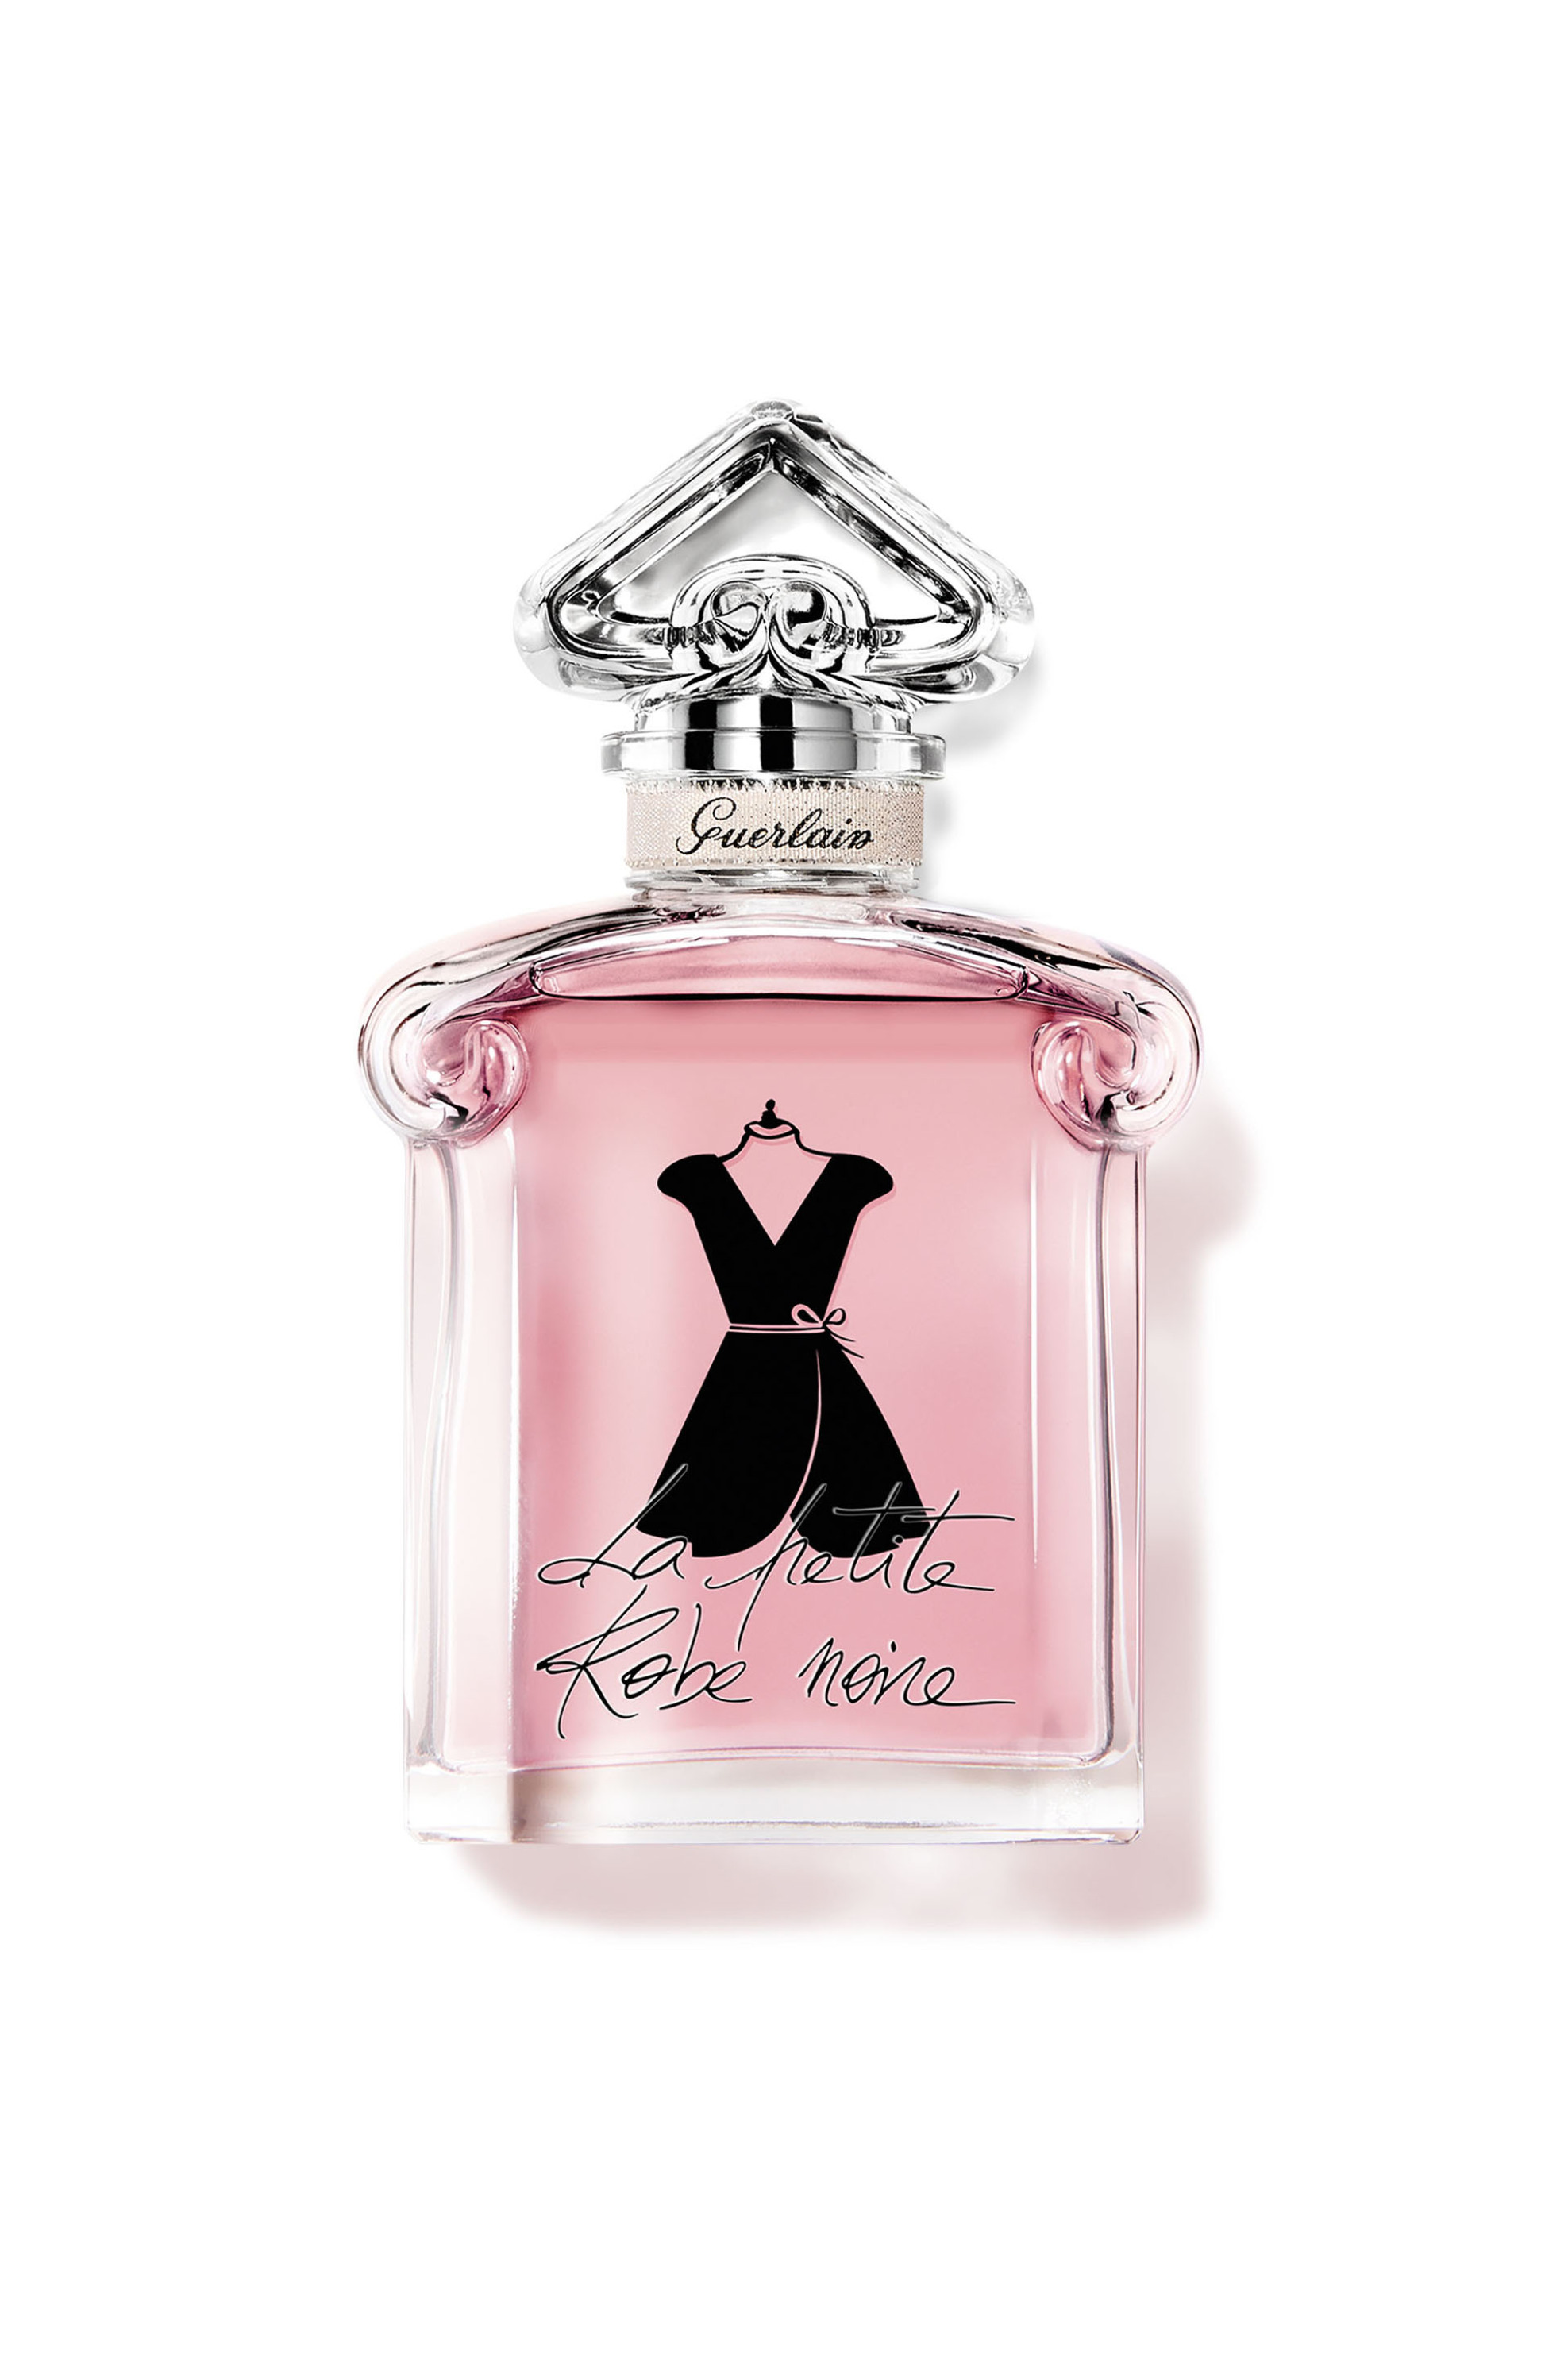 Προϊόντα Ομορφιάς > ΑΡΩΜΑΤΑ > Γυναικεία Αρώματα > Eau de Parfum - Parfum Guerlain Petite Robe Noire Ma Robe Velours EdP - G013686